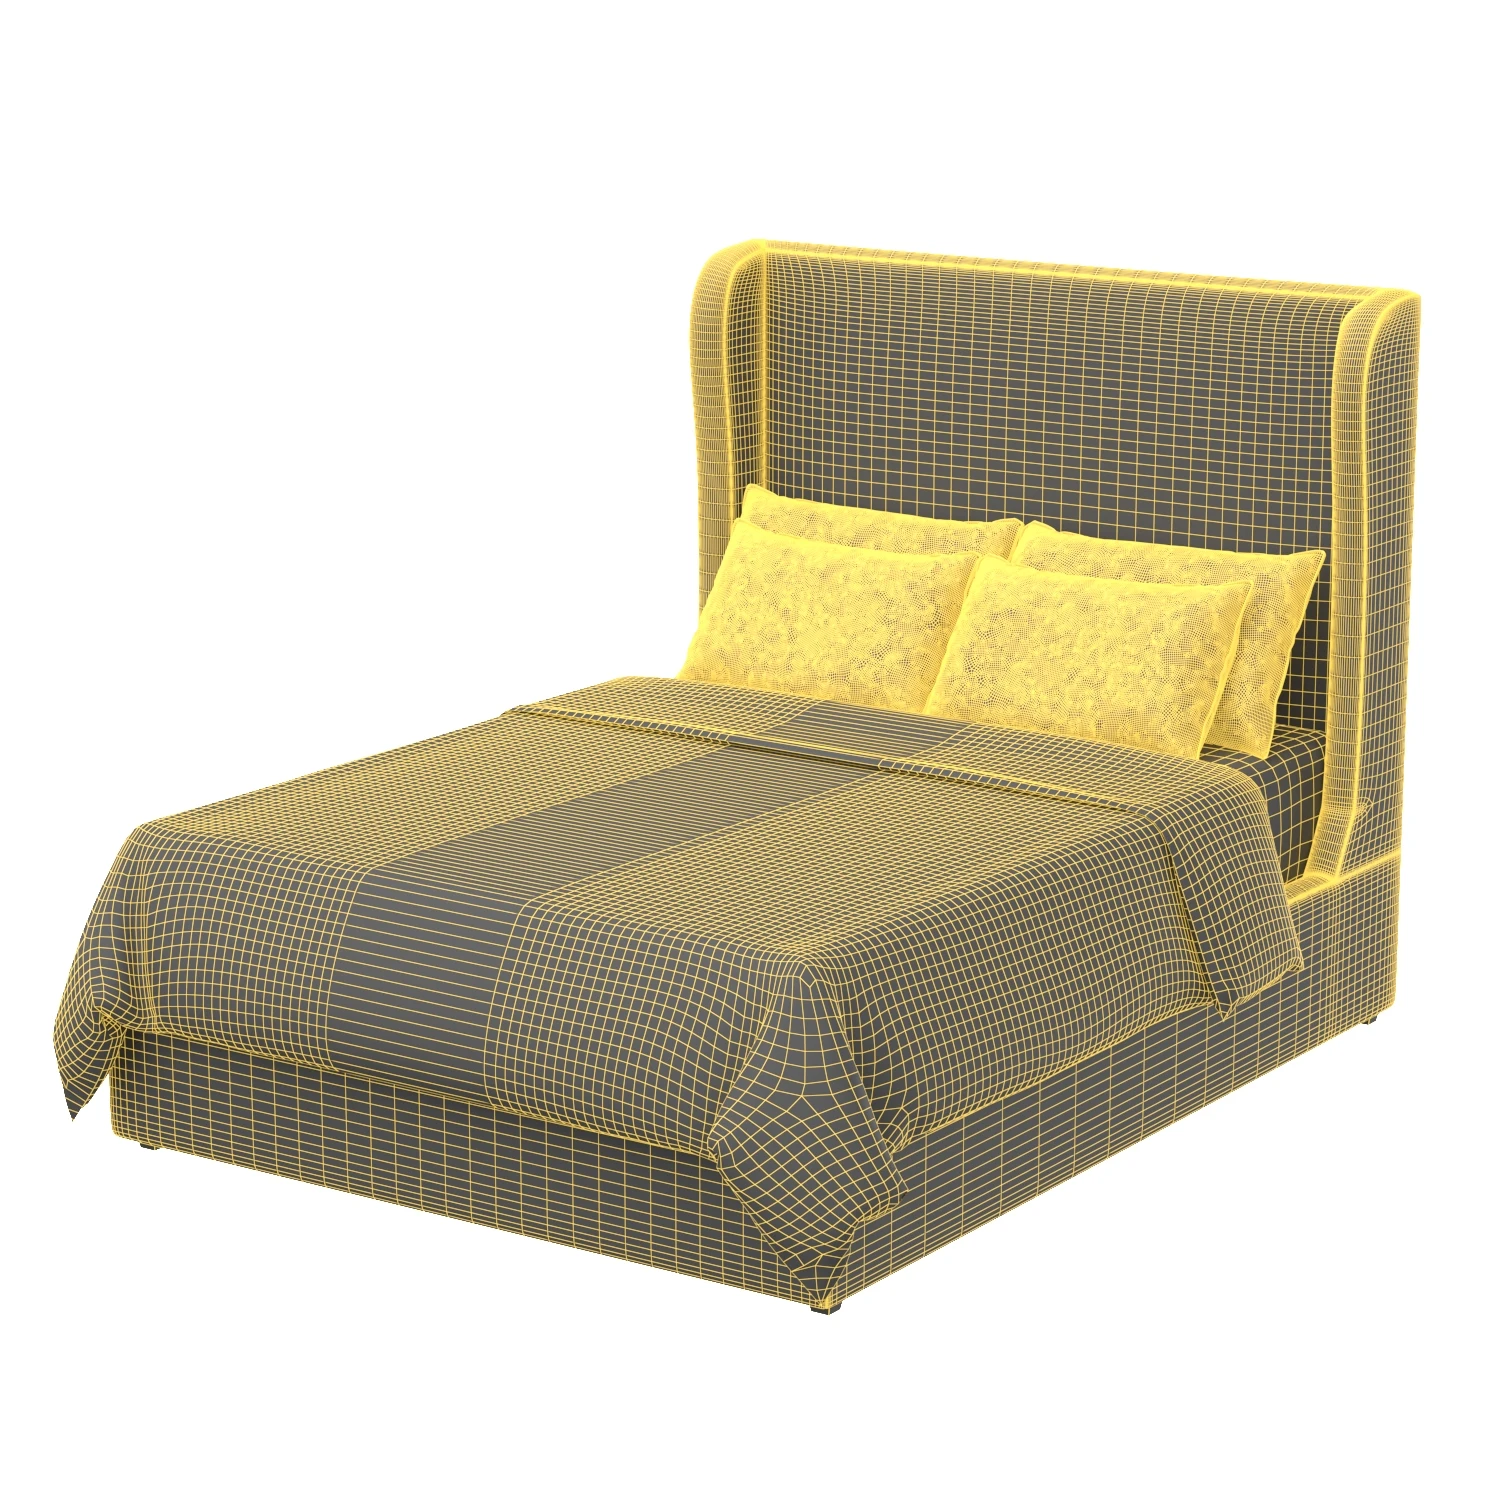 Delancey Bed 3D Model_07